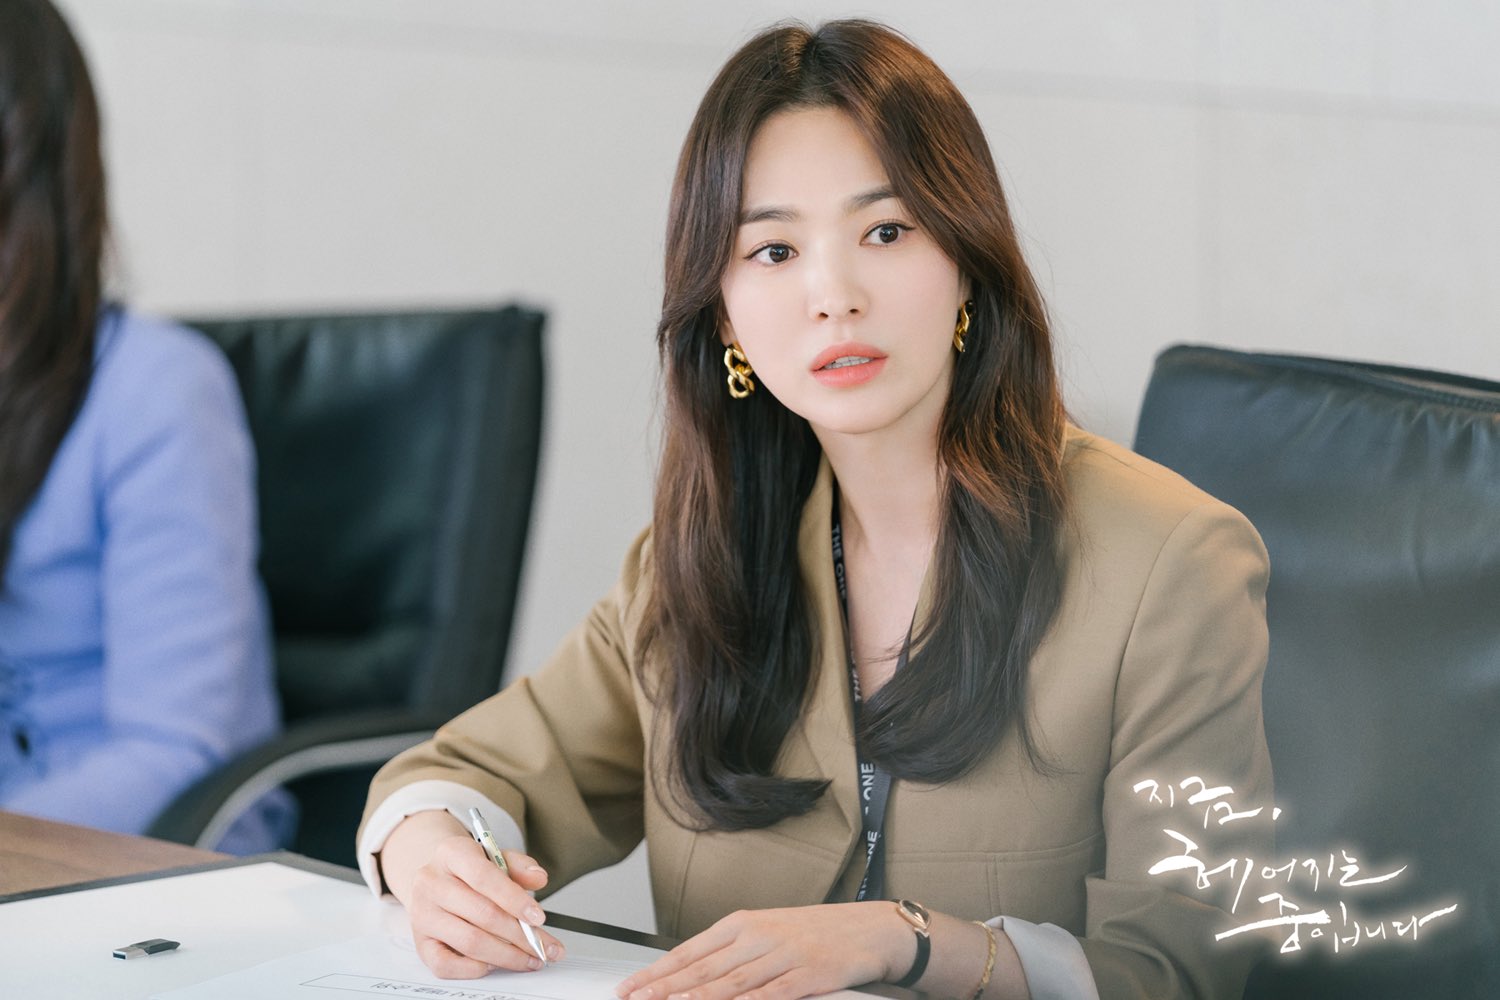 Tủ đồ của Song Hye Kyo trong phim mới chỉ loanh quanh toàn đen-trắng-be, nhưng đẳng cấp khó ai sánh bằng - Ảnh 2.